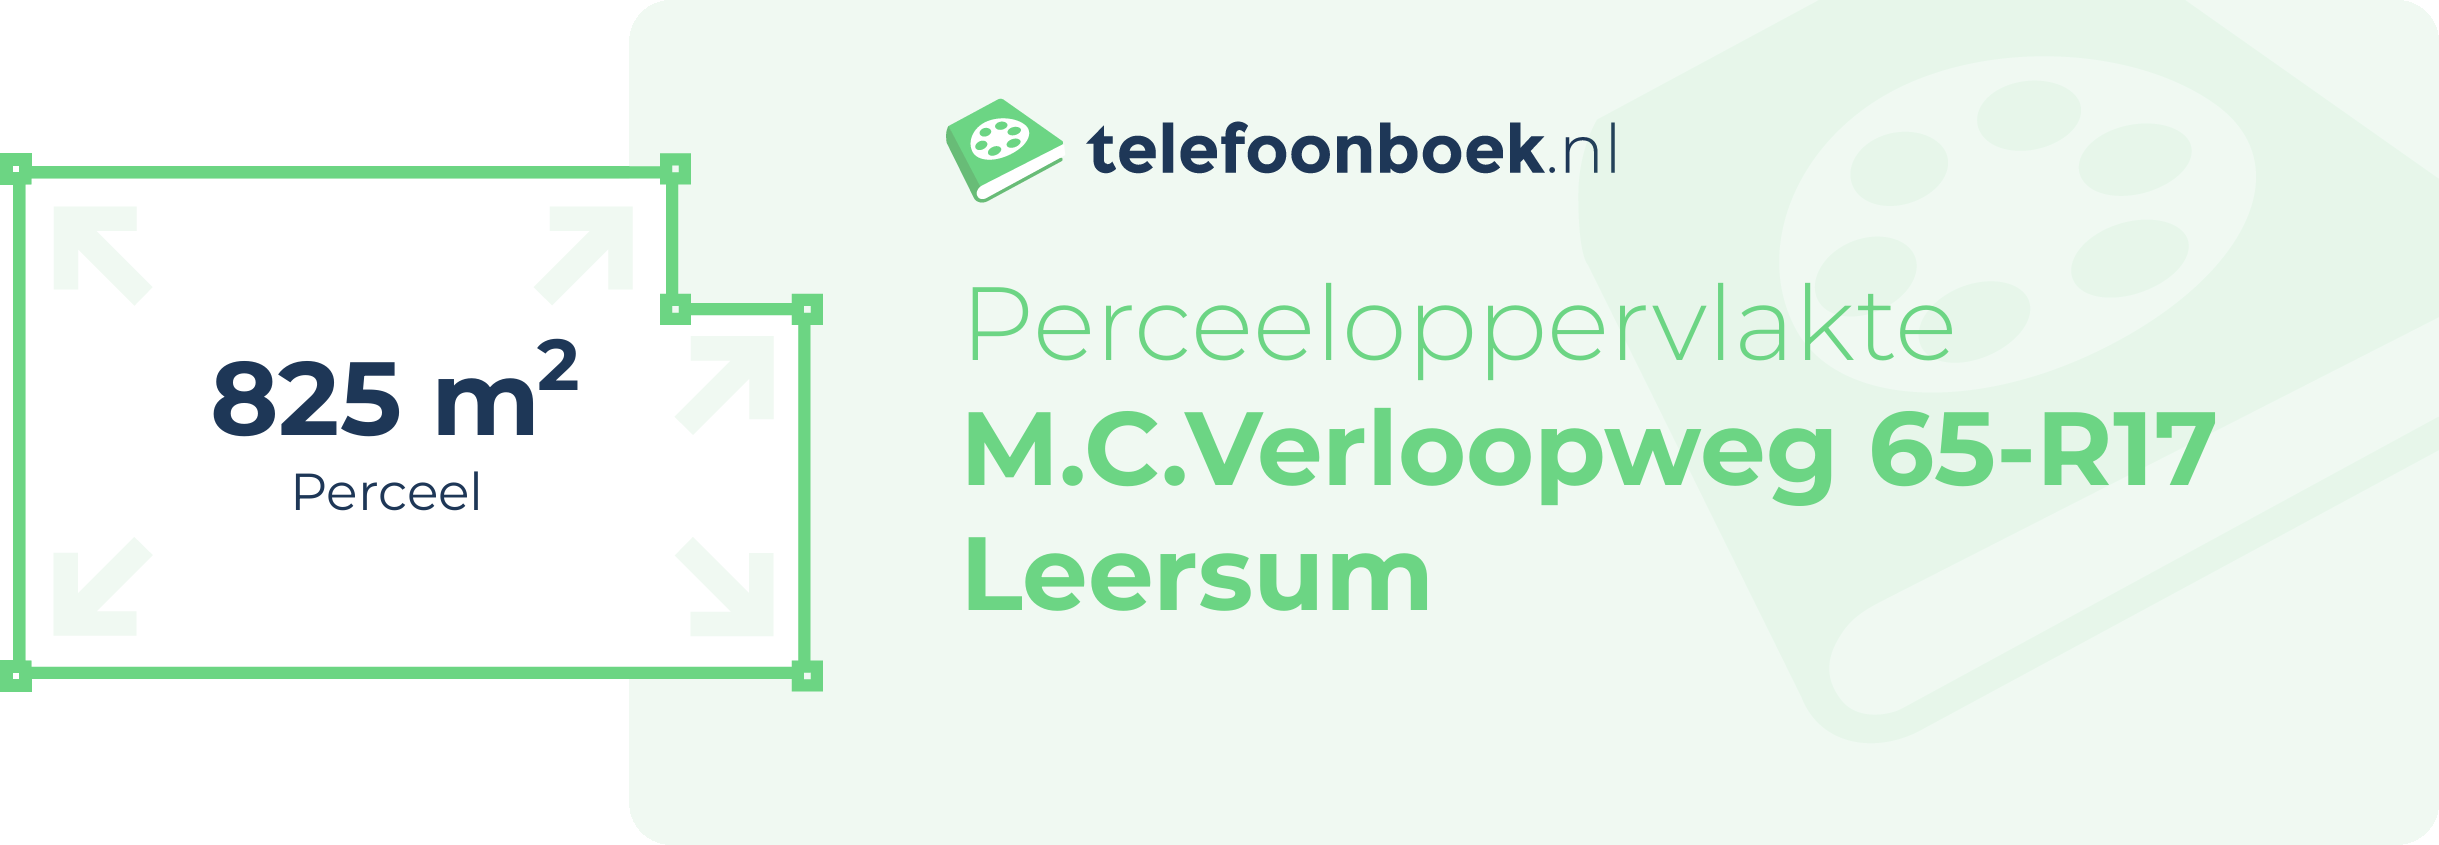 Perceeloppervlakte M.C.Verloopweg 65-R17 Leersum